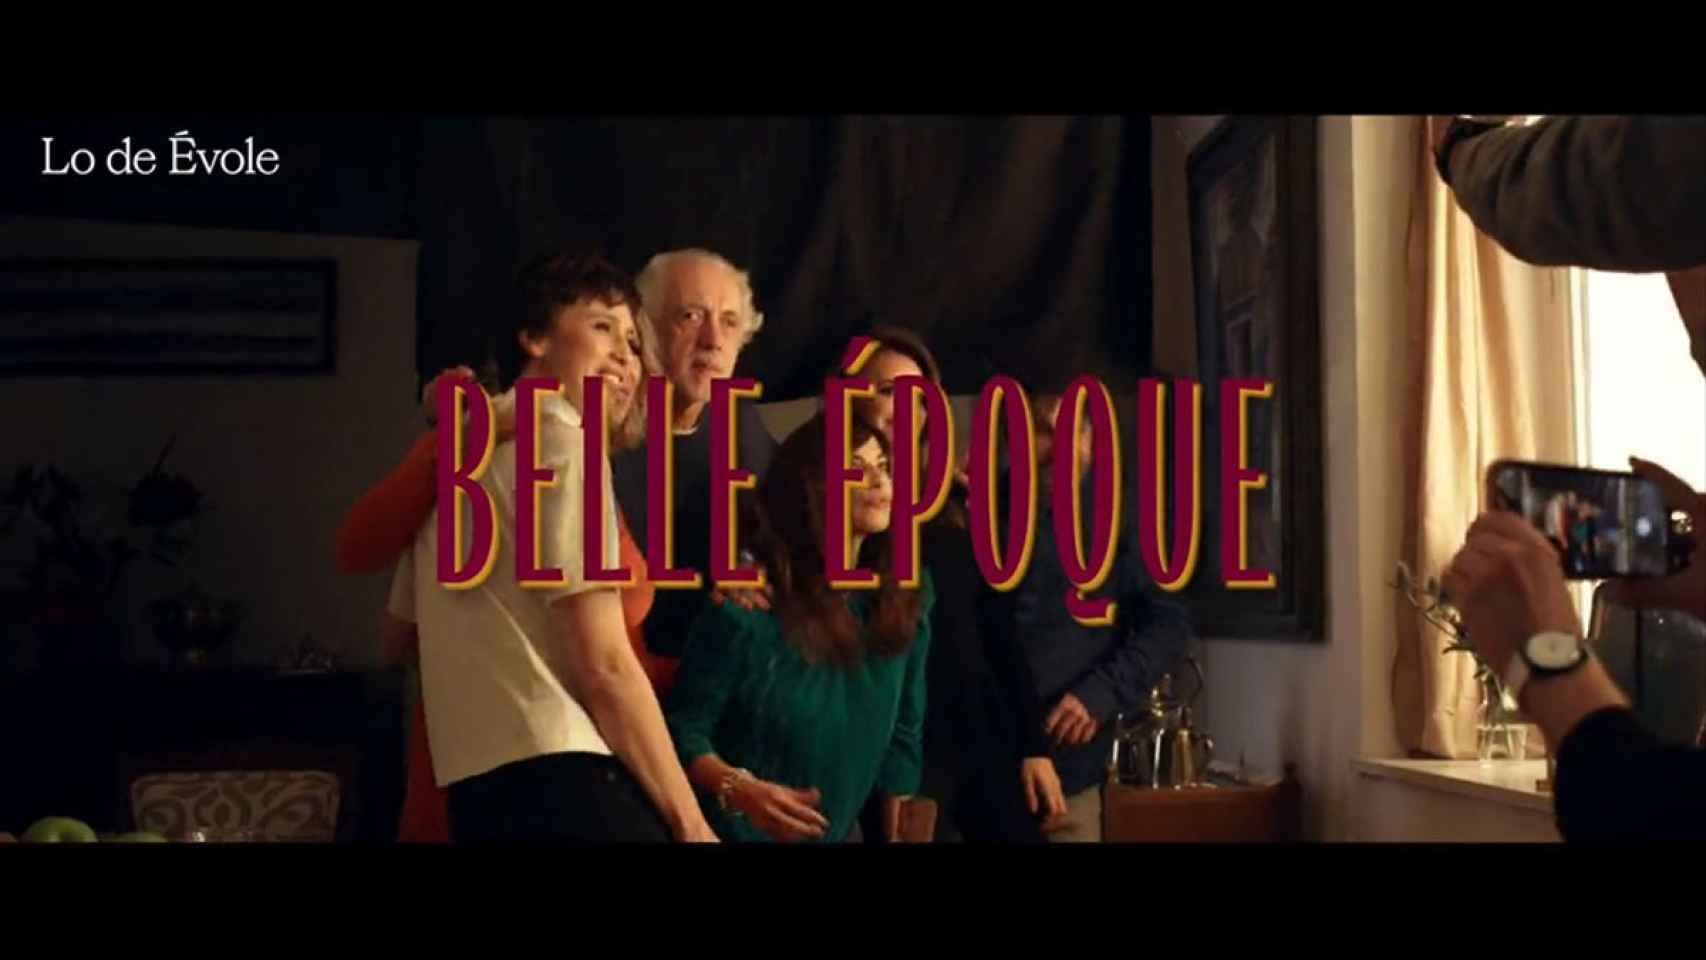 La noche de los Oscar reunirá a Trueba, Penélope Cruz y el reparto de ‘Belle Époque’ en ’Lo de Évole'.